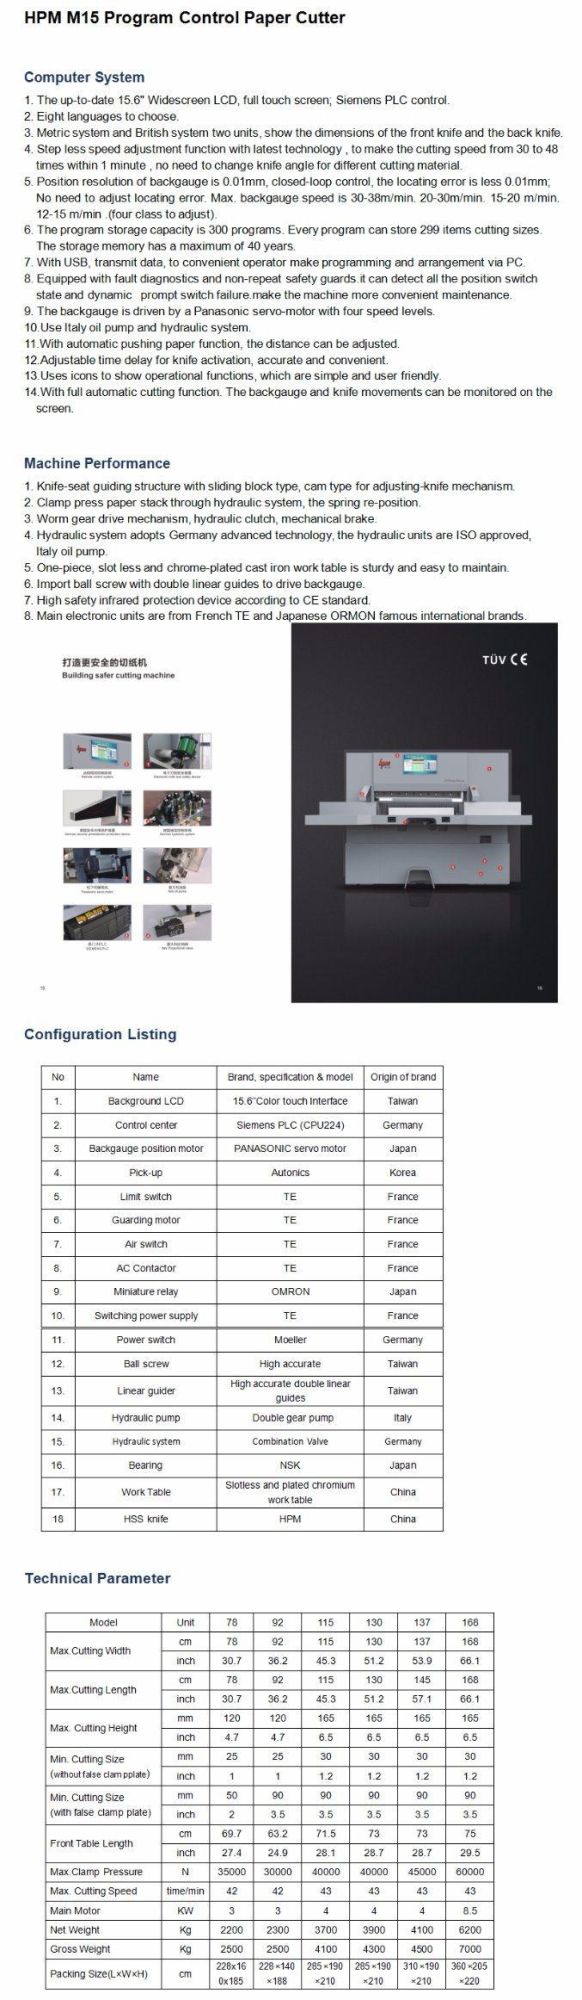 Professional Manufacturer Program-Control Hydraulic Paper Cutting Machine